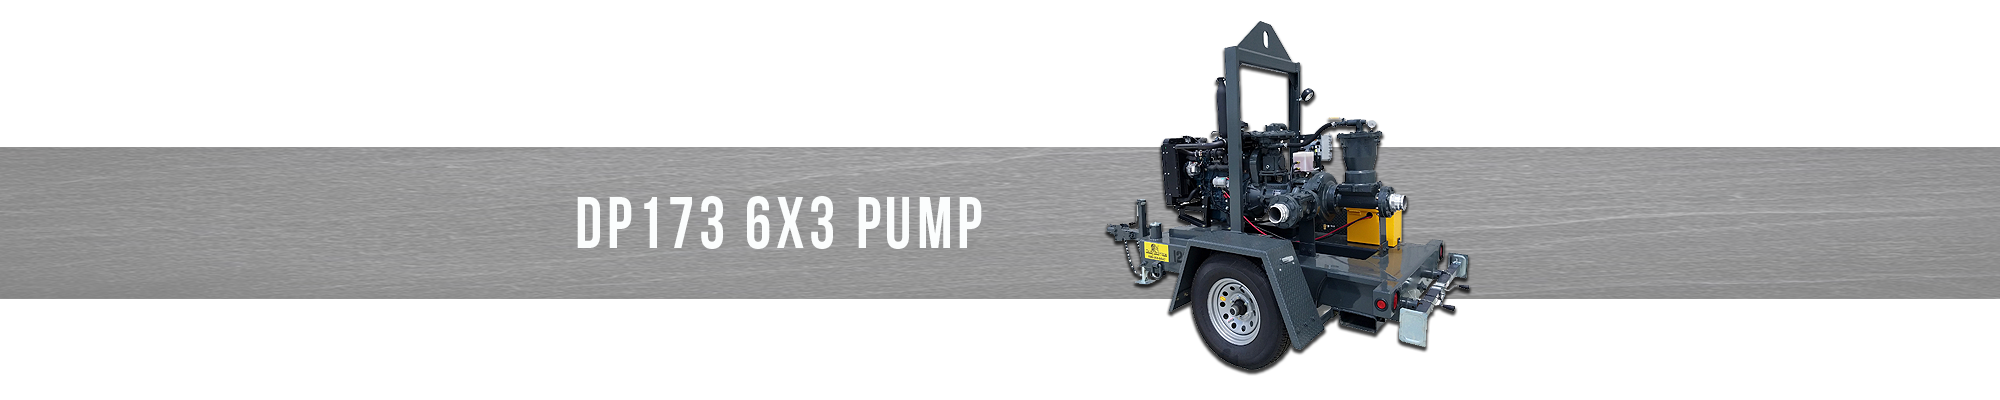 DP173 6x3 Pump